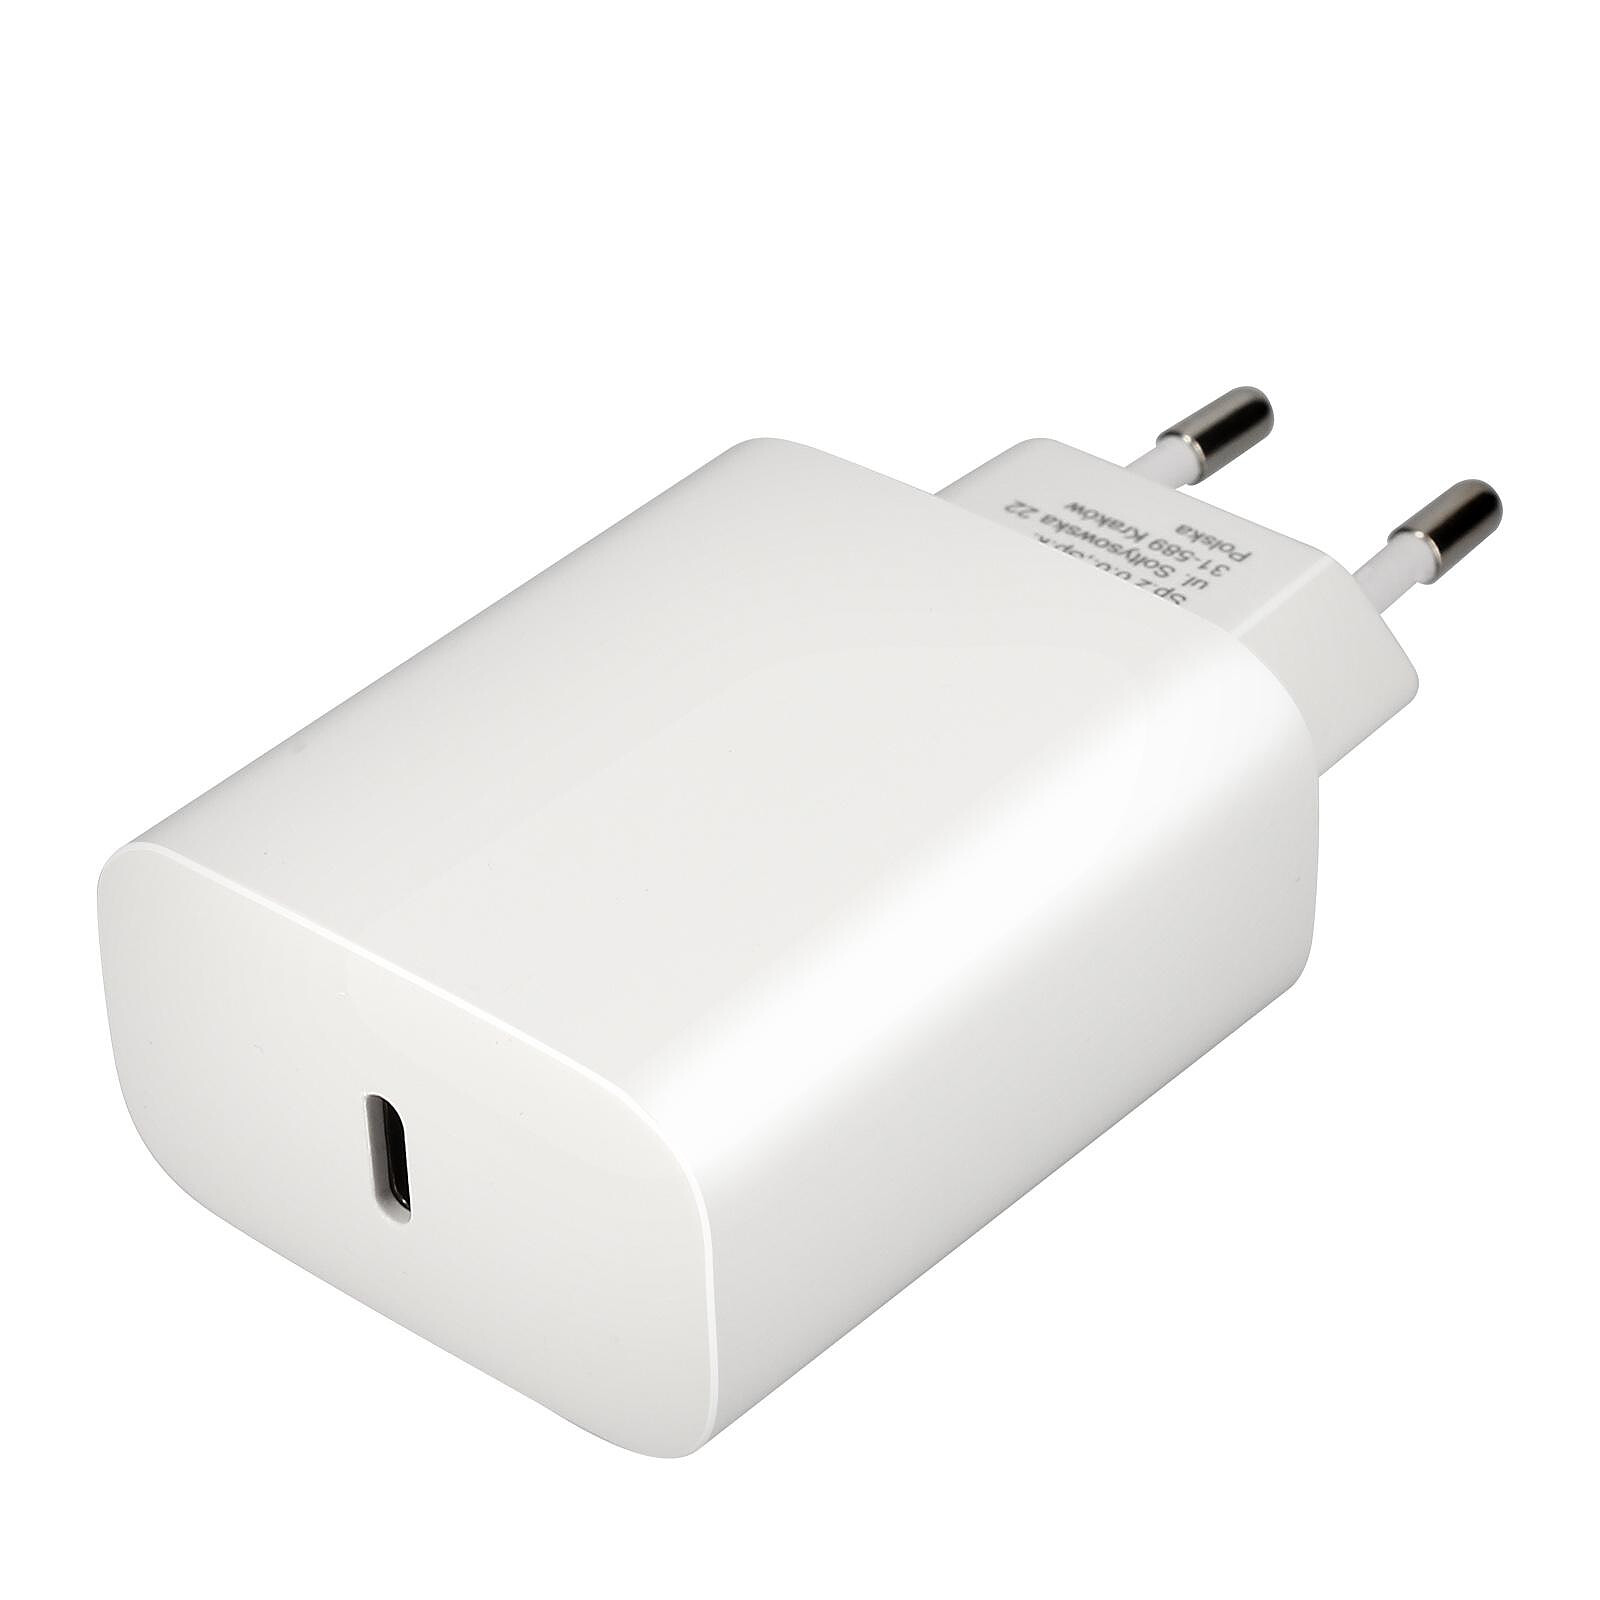 Forcell Chargeur secteur USB-C Power Delivery 25W Quick Charge 4.0 Fonction  AFC - Chargeur téléphone - LDLC